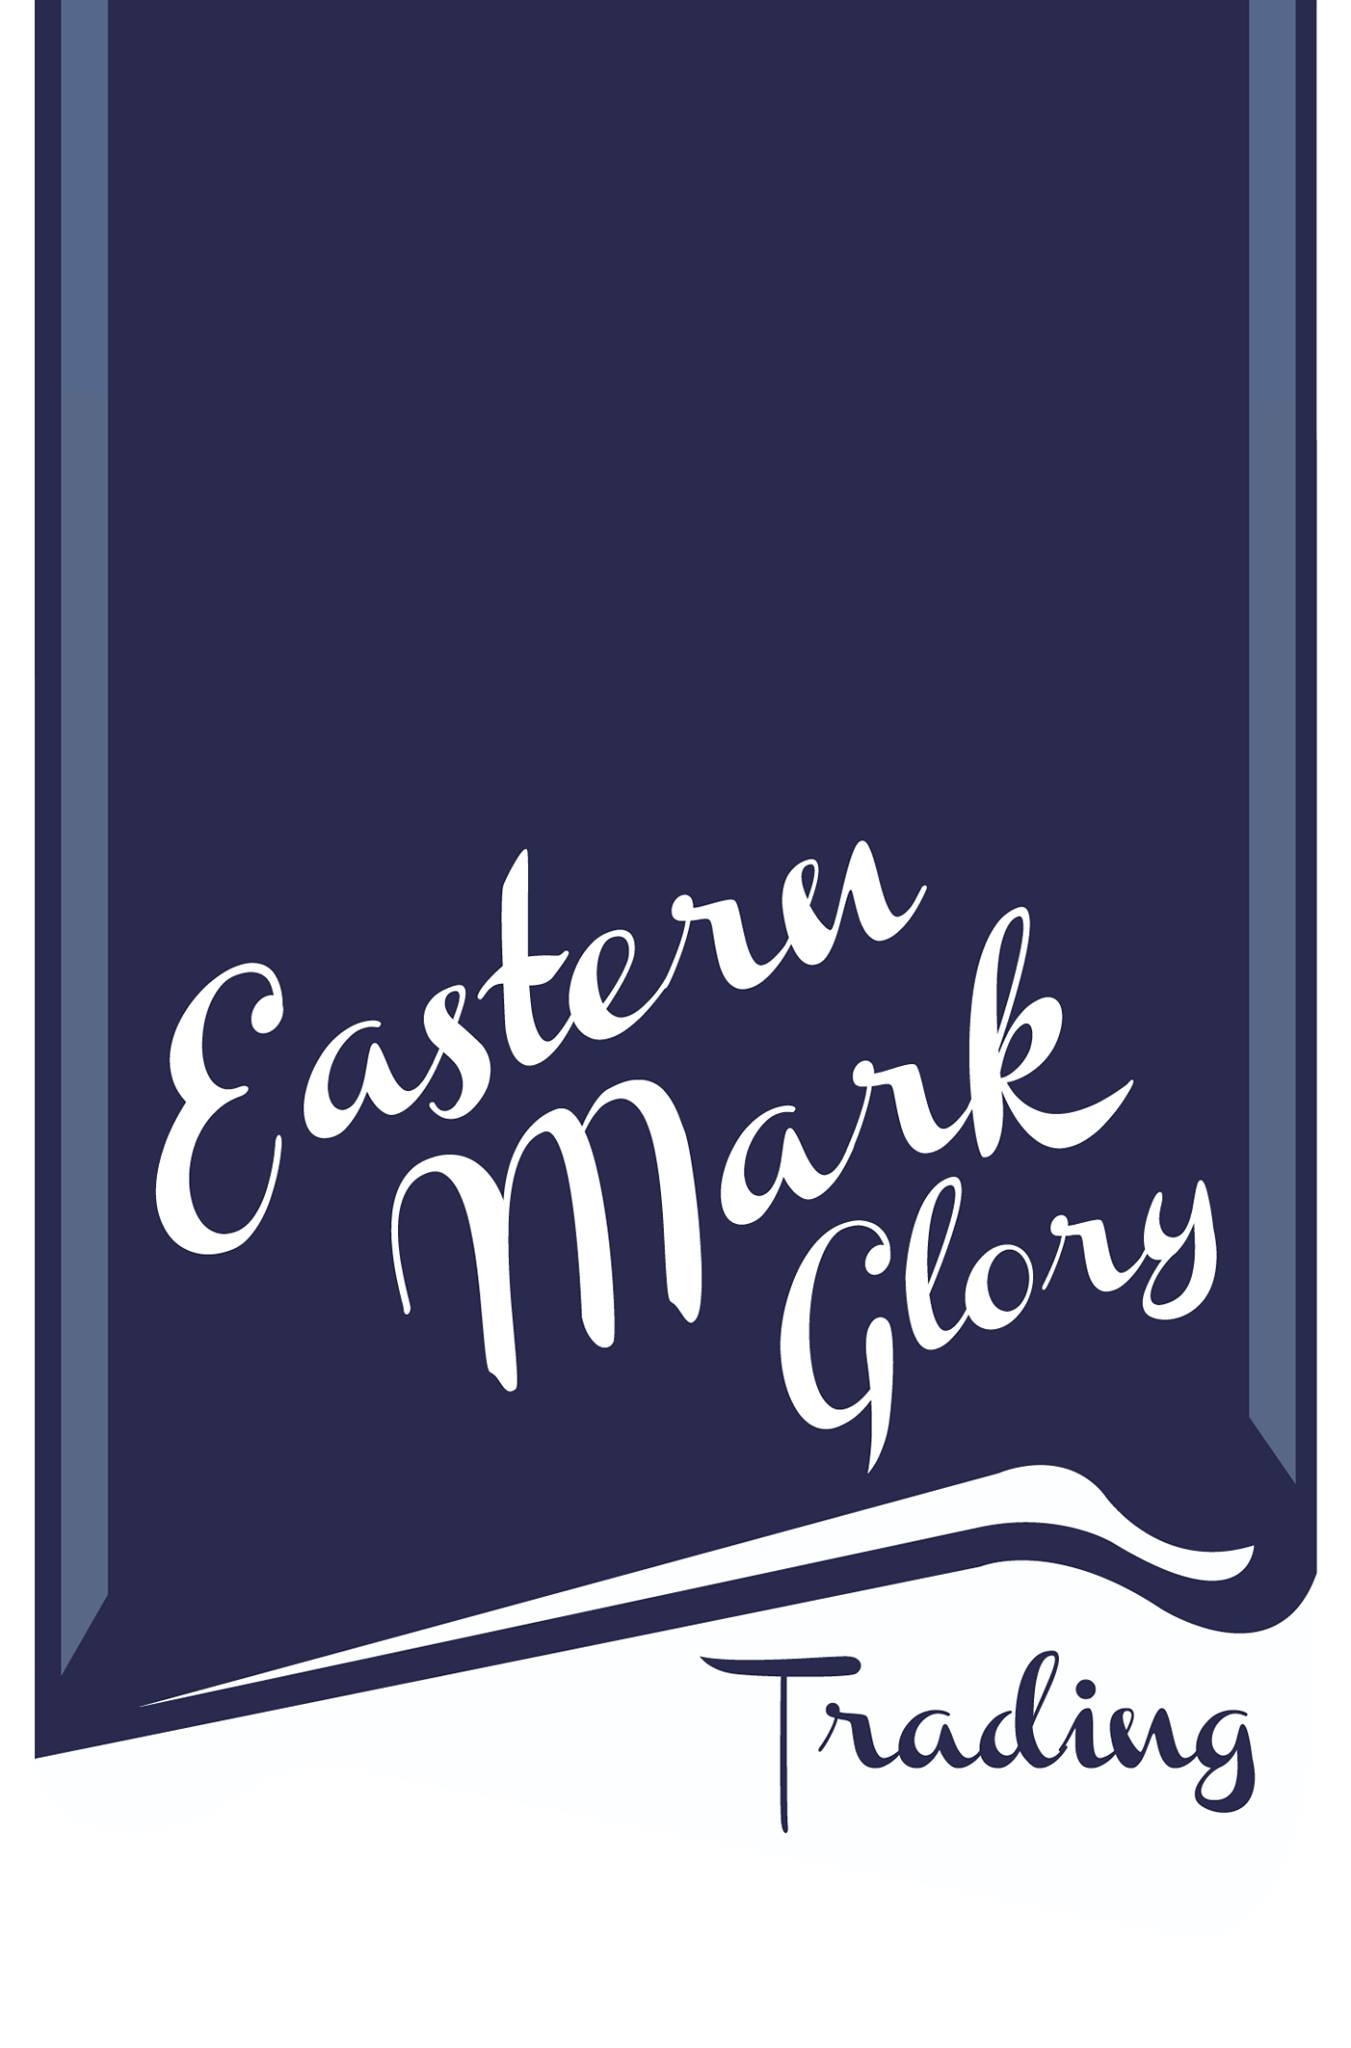 Eastern Mark Glory Trading